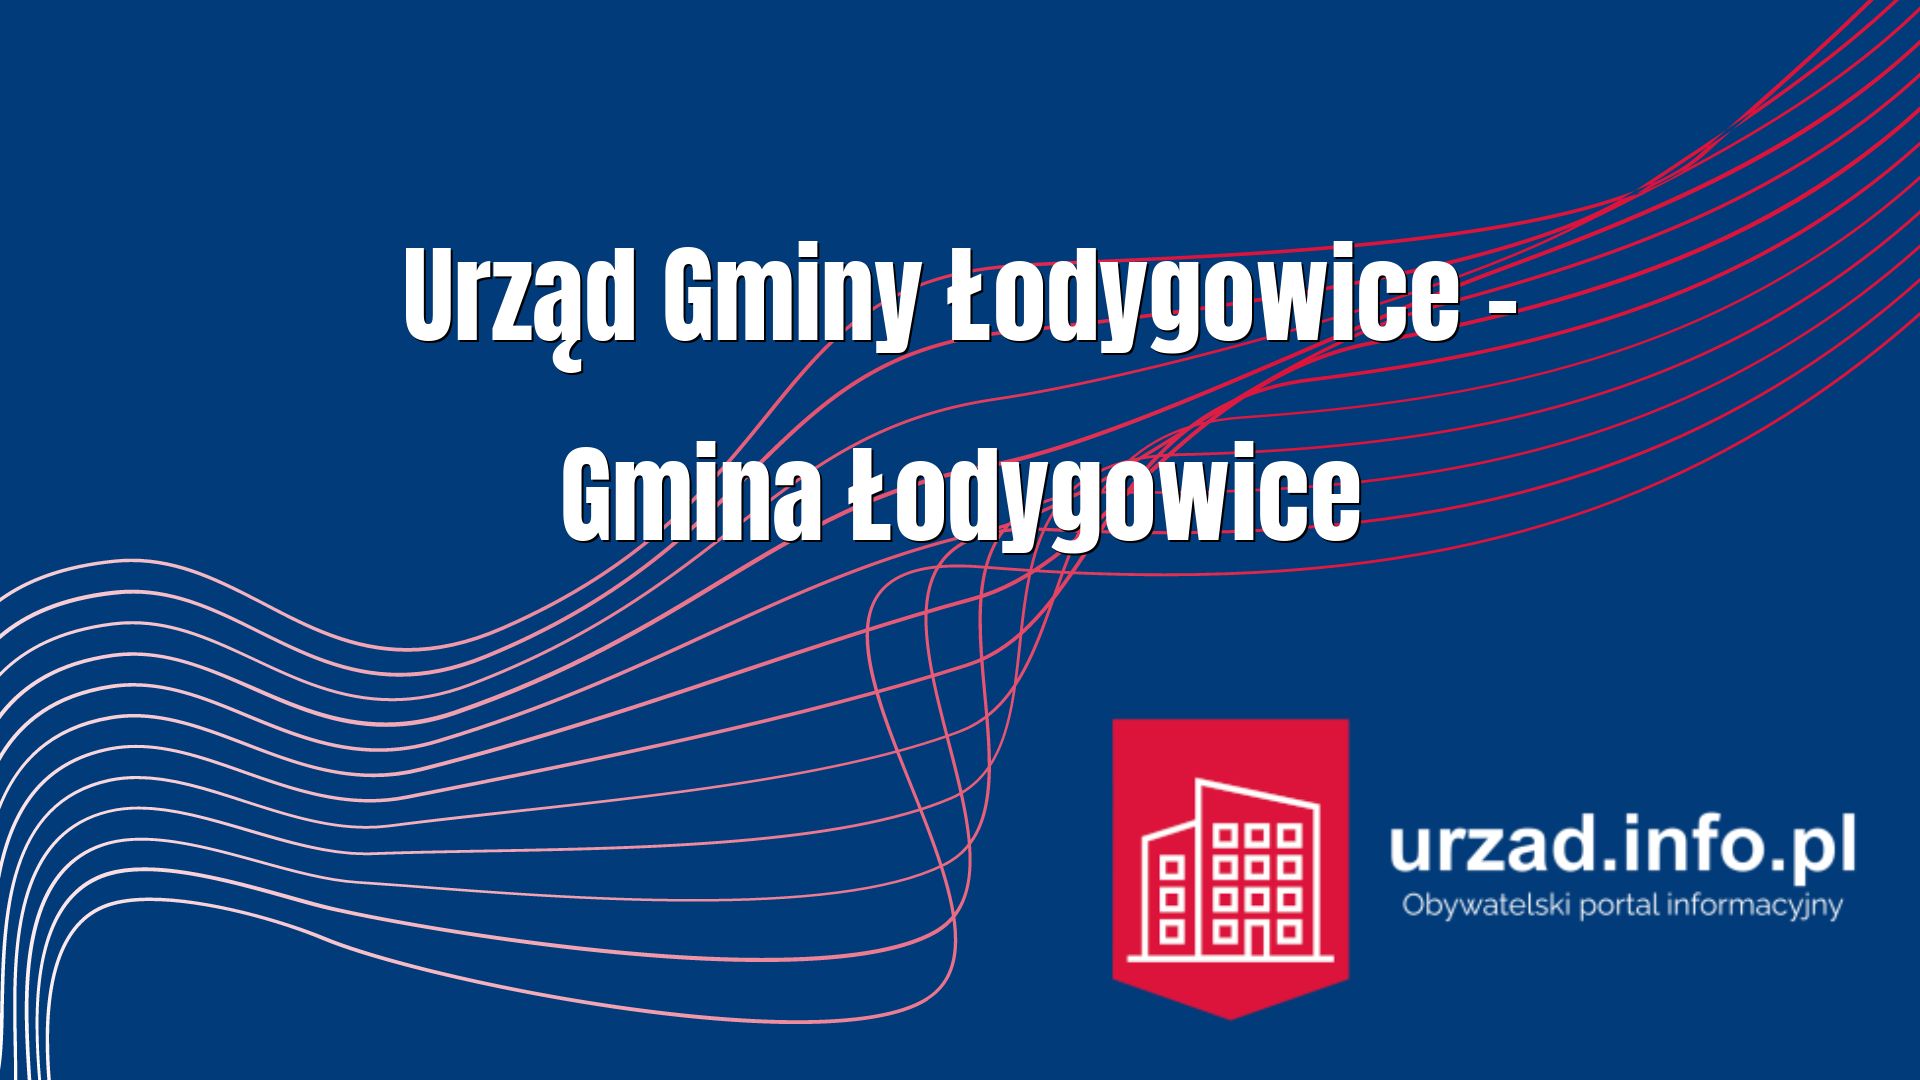 Urząd Gminy Łodygowice – Gmina Łodygowice